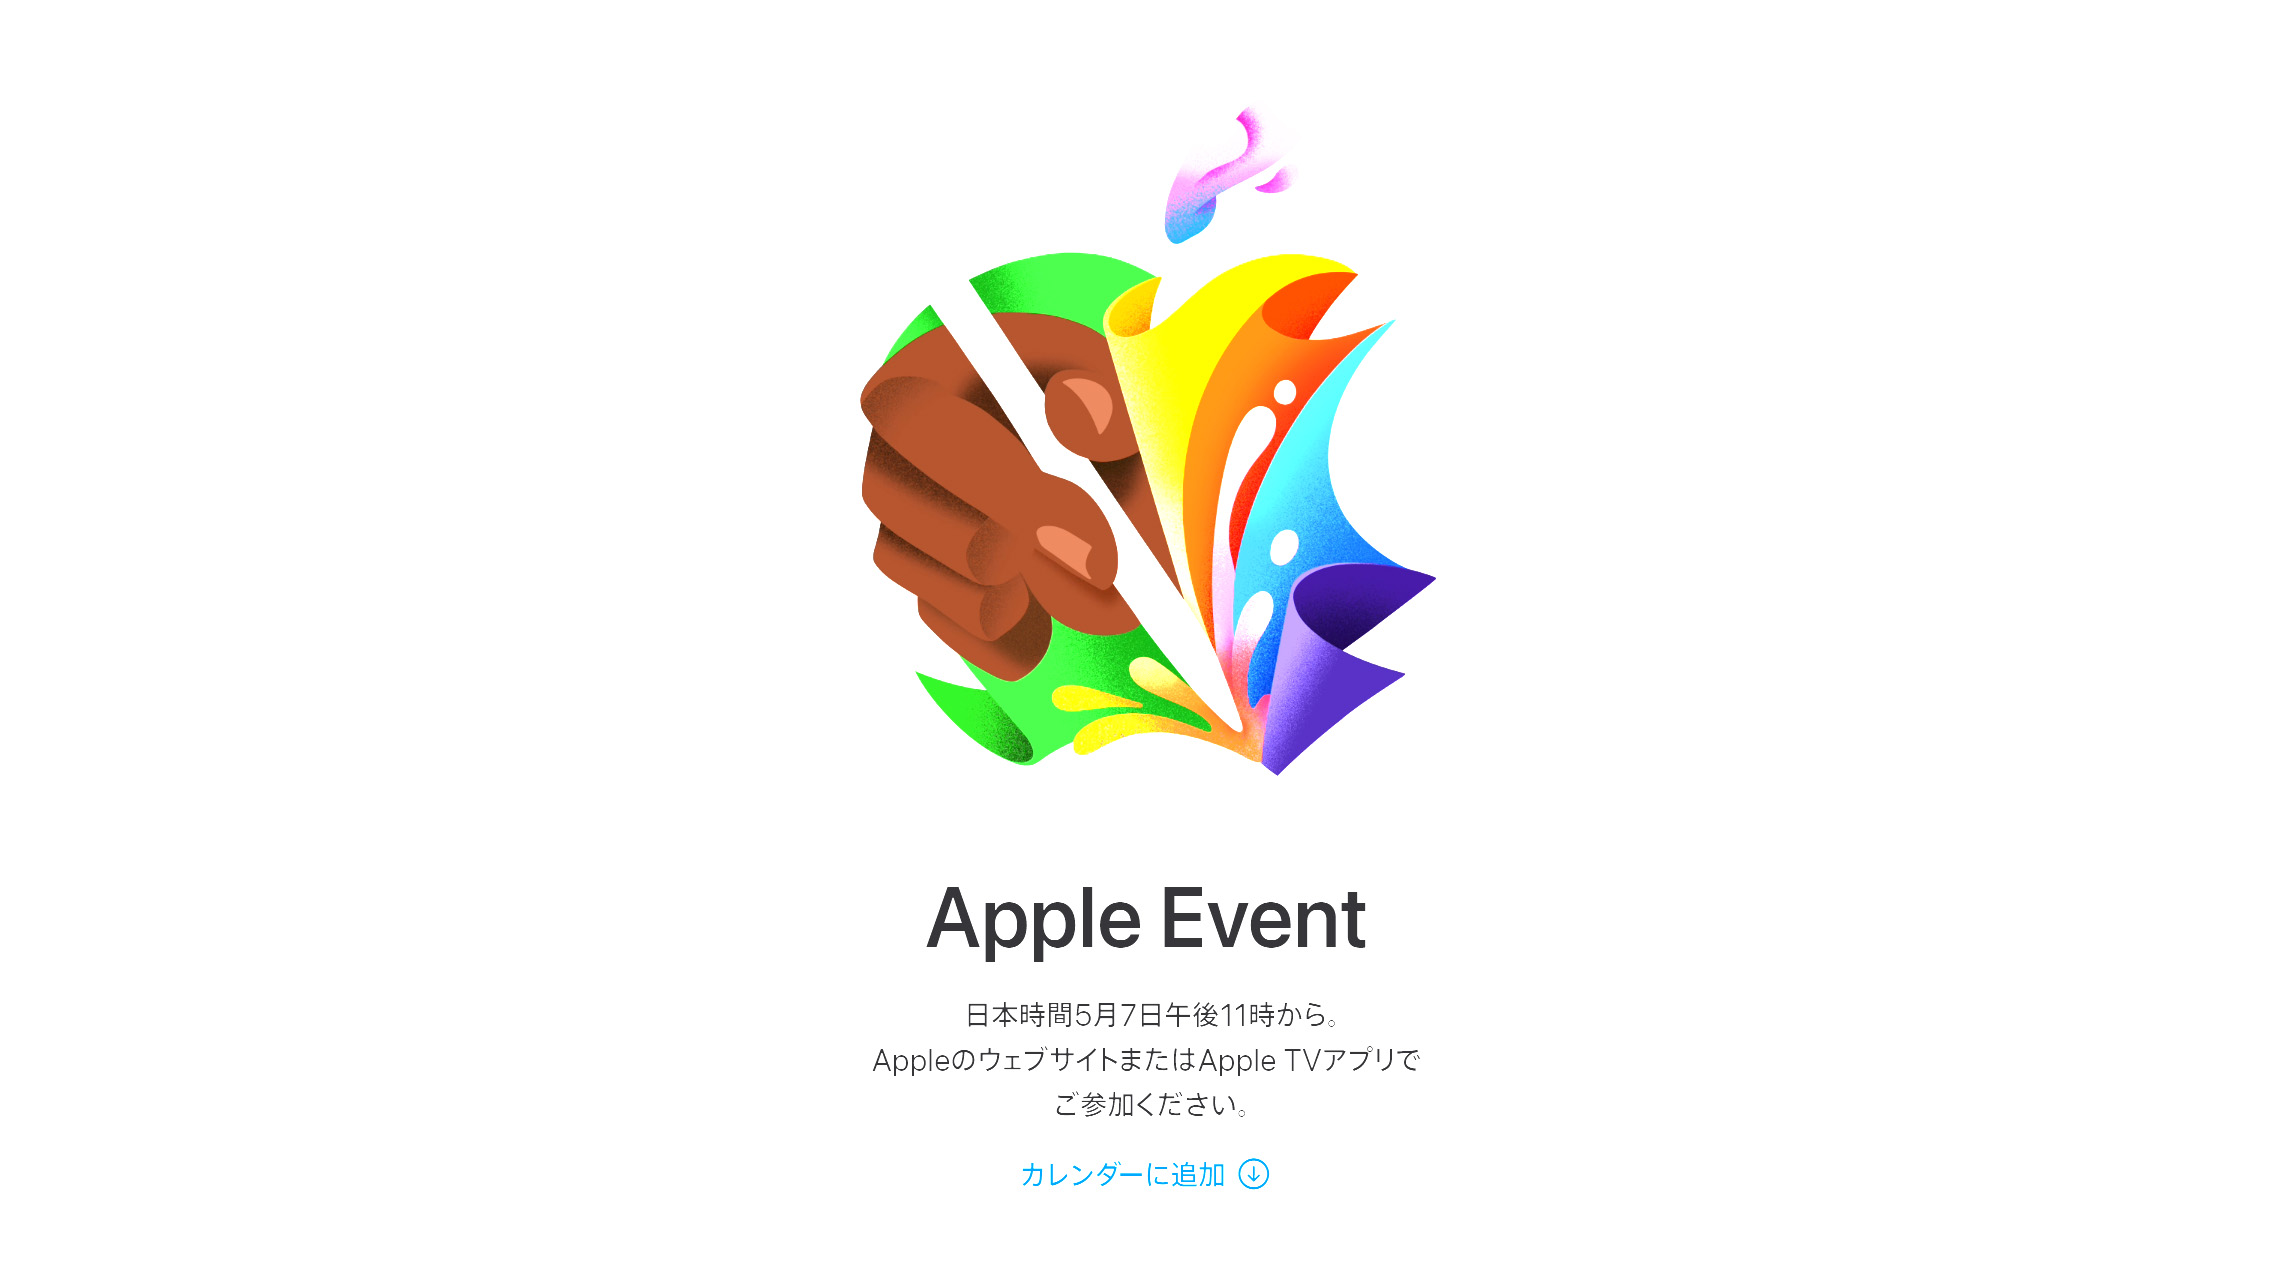 5月7日午後11時からApple Event開催、内容はiPad関連でほぼ確定